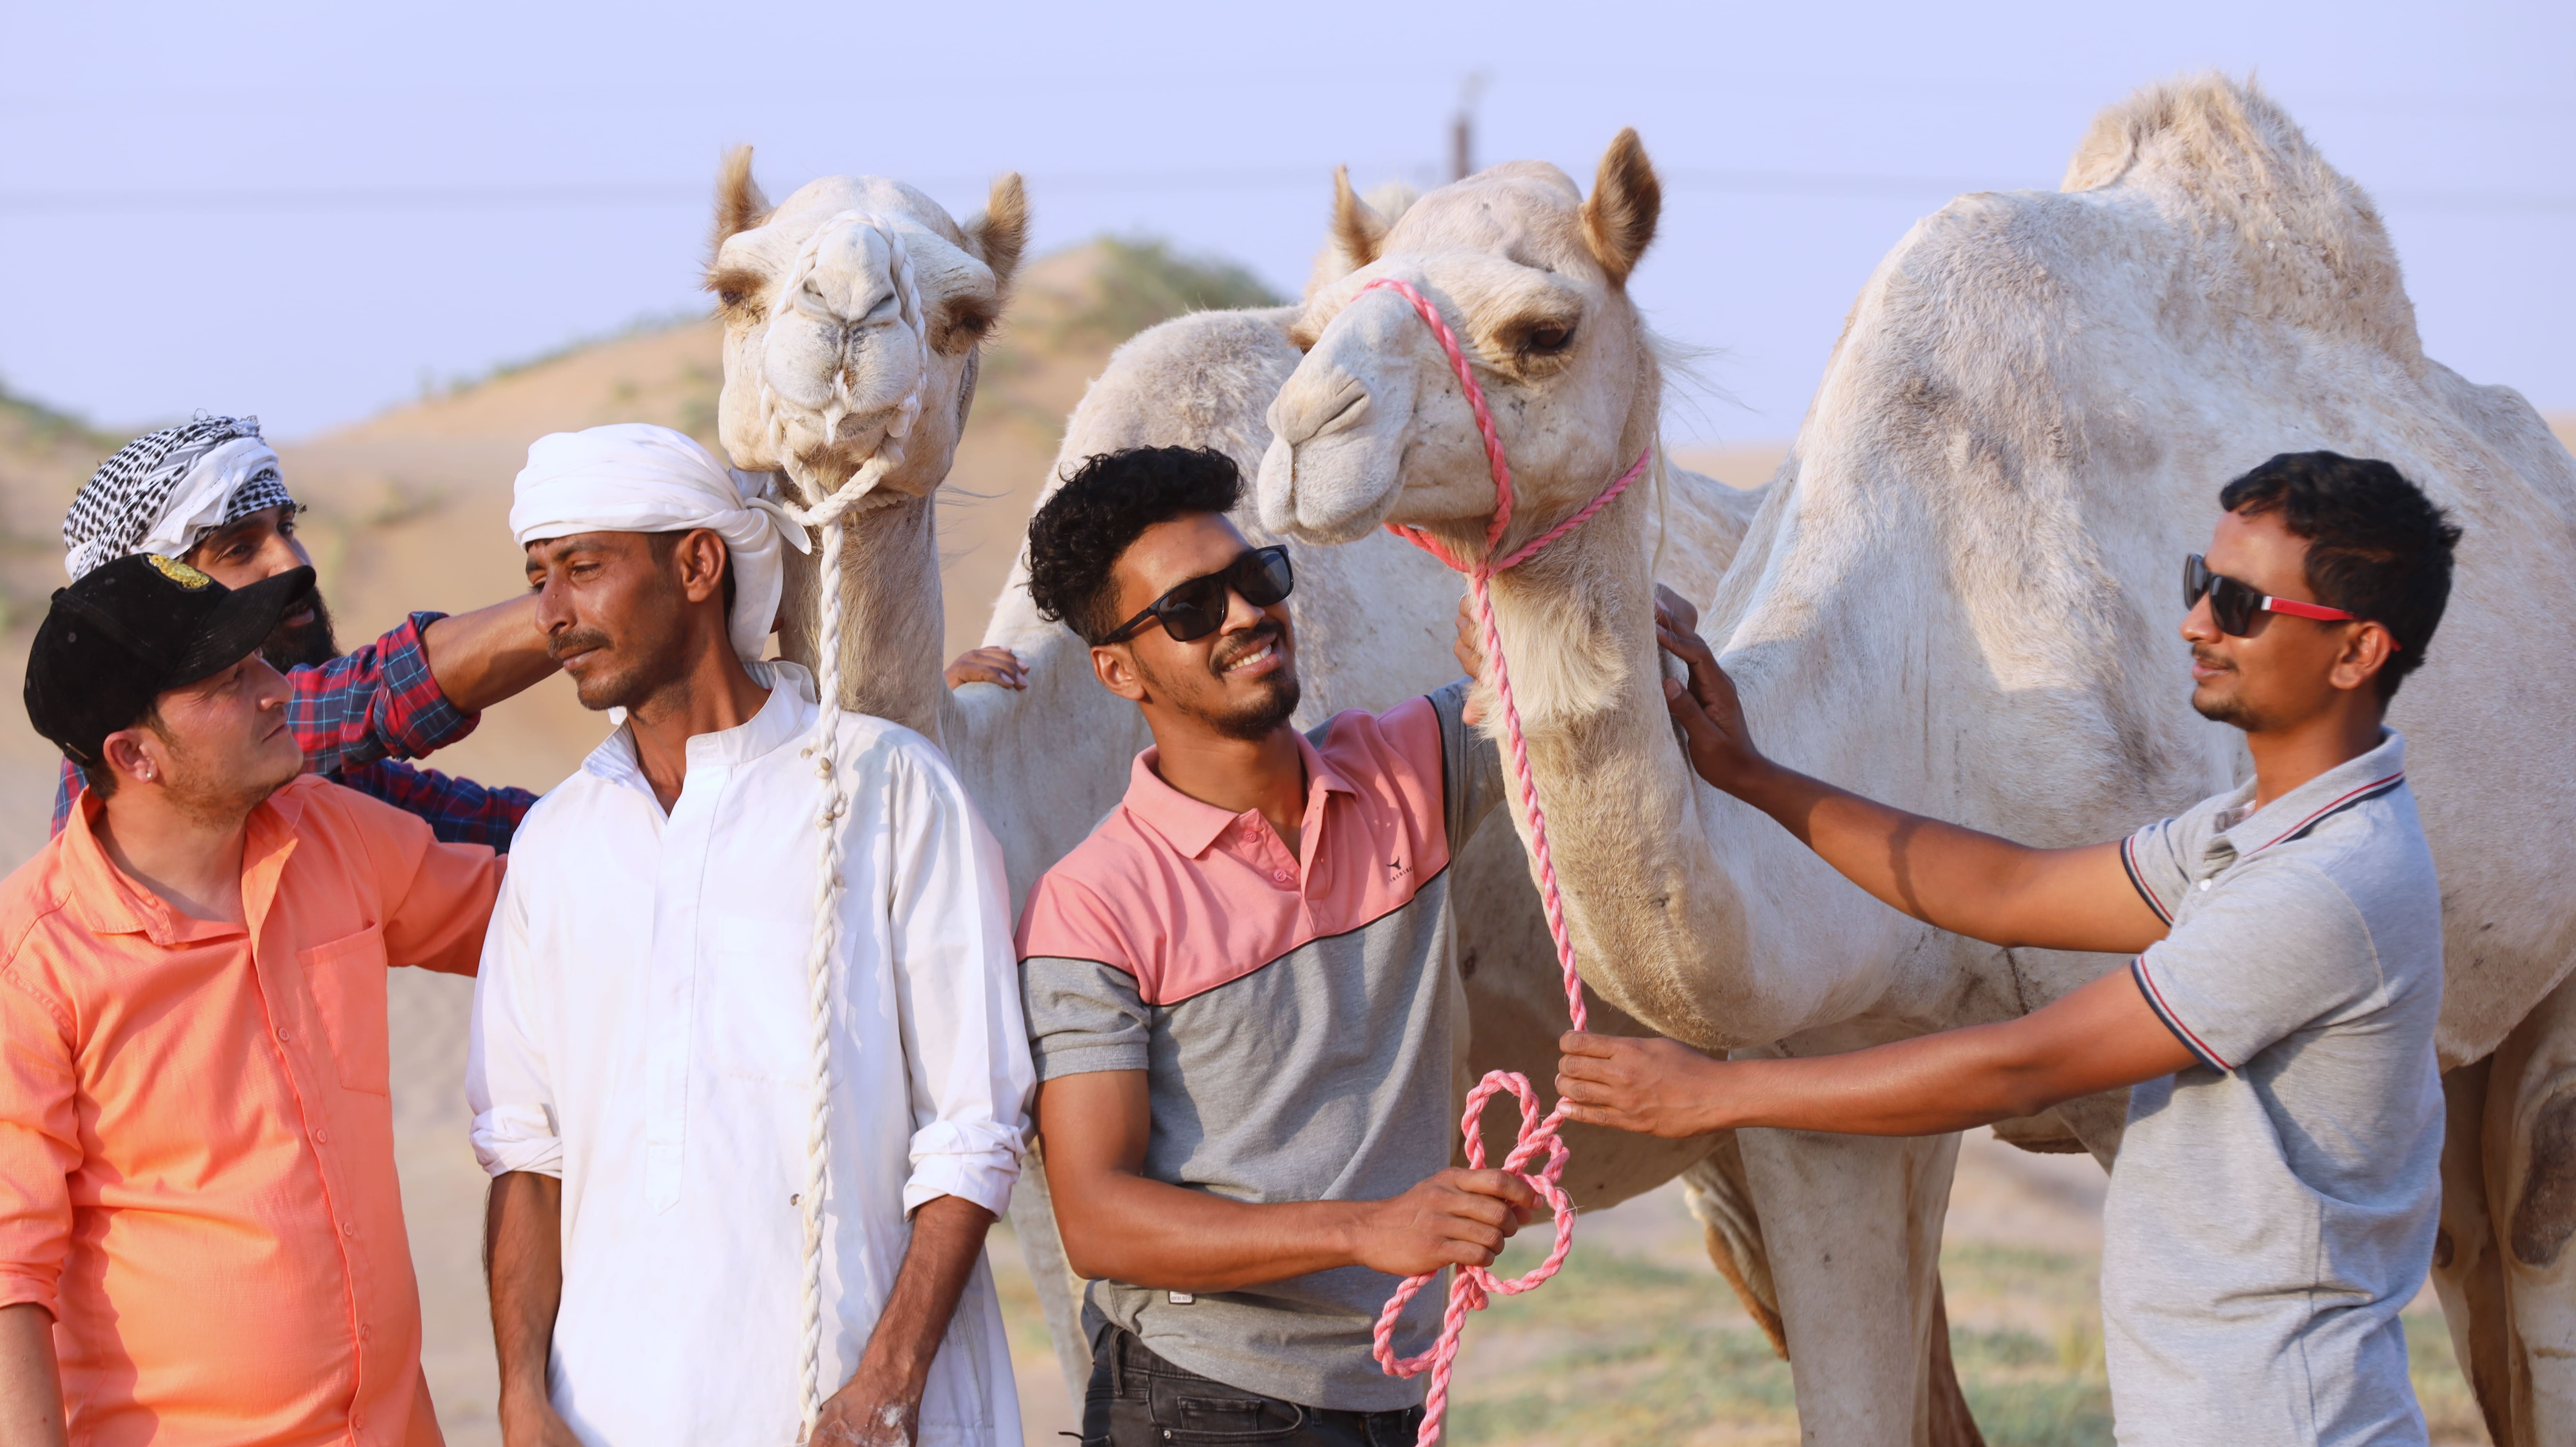 camel farm visit dubai